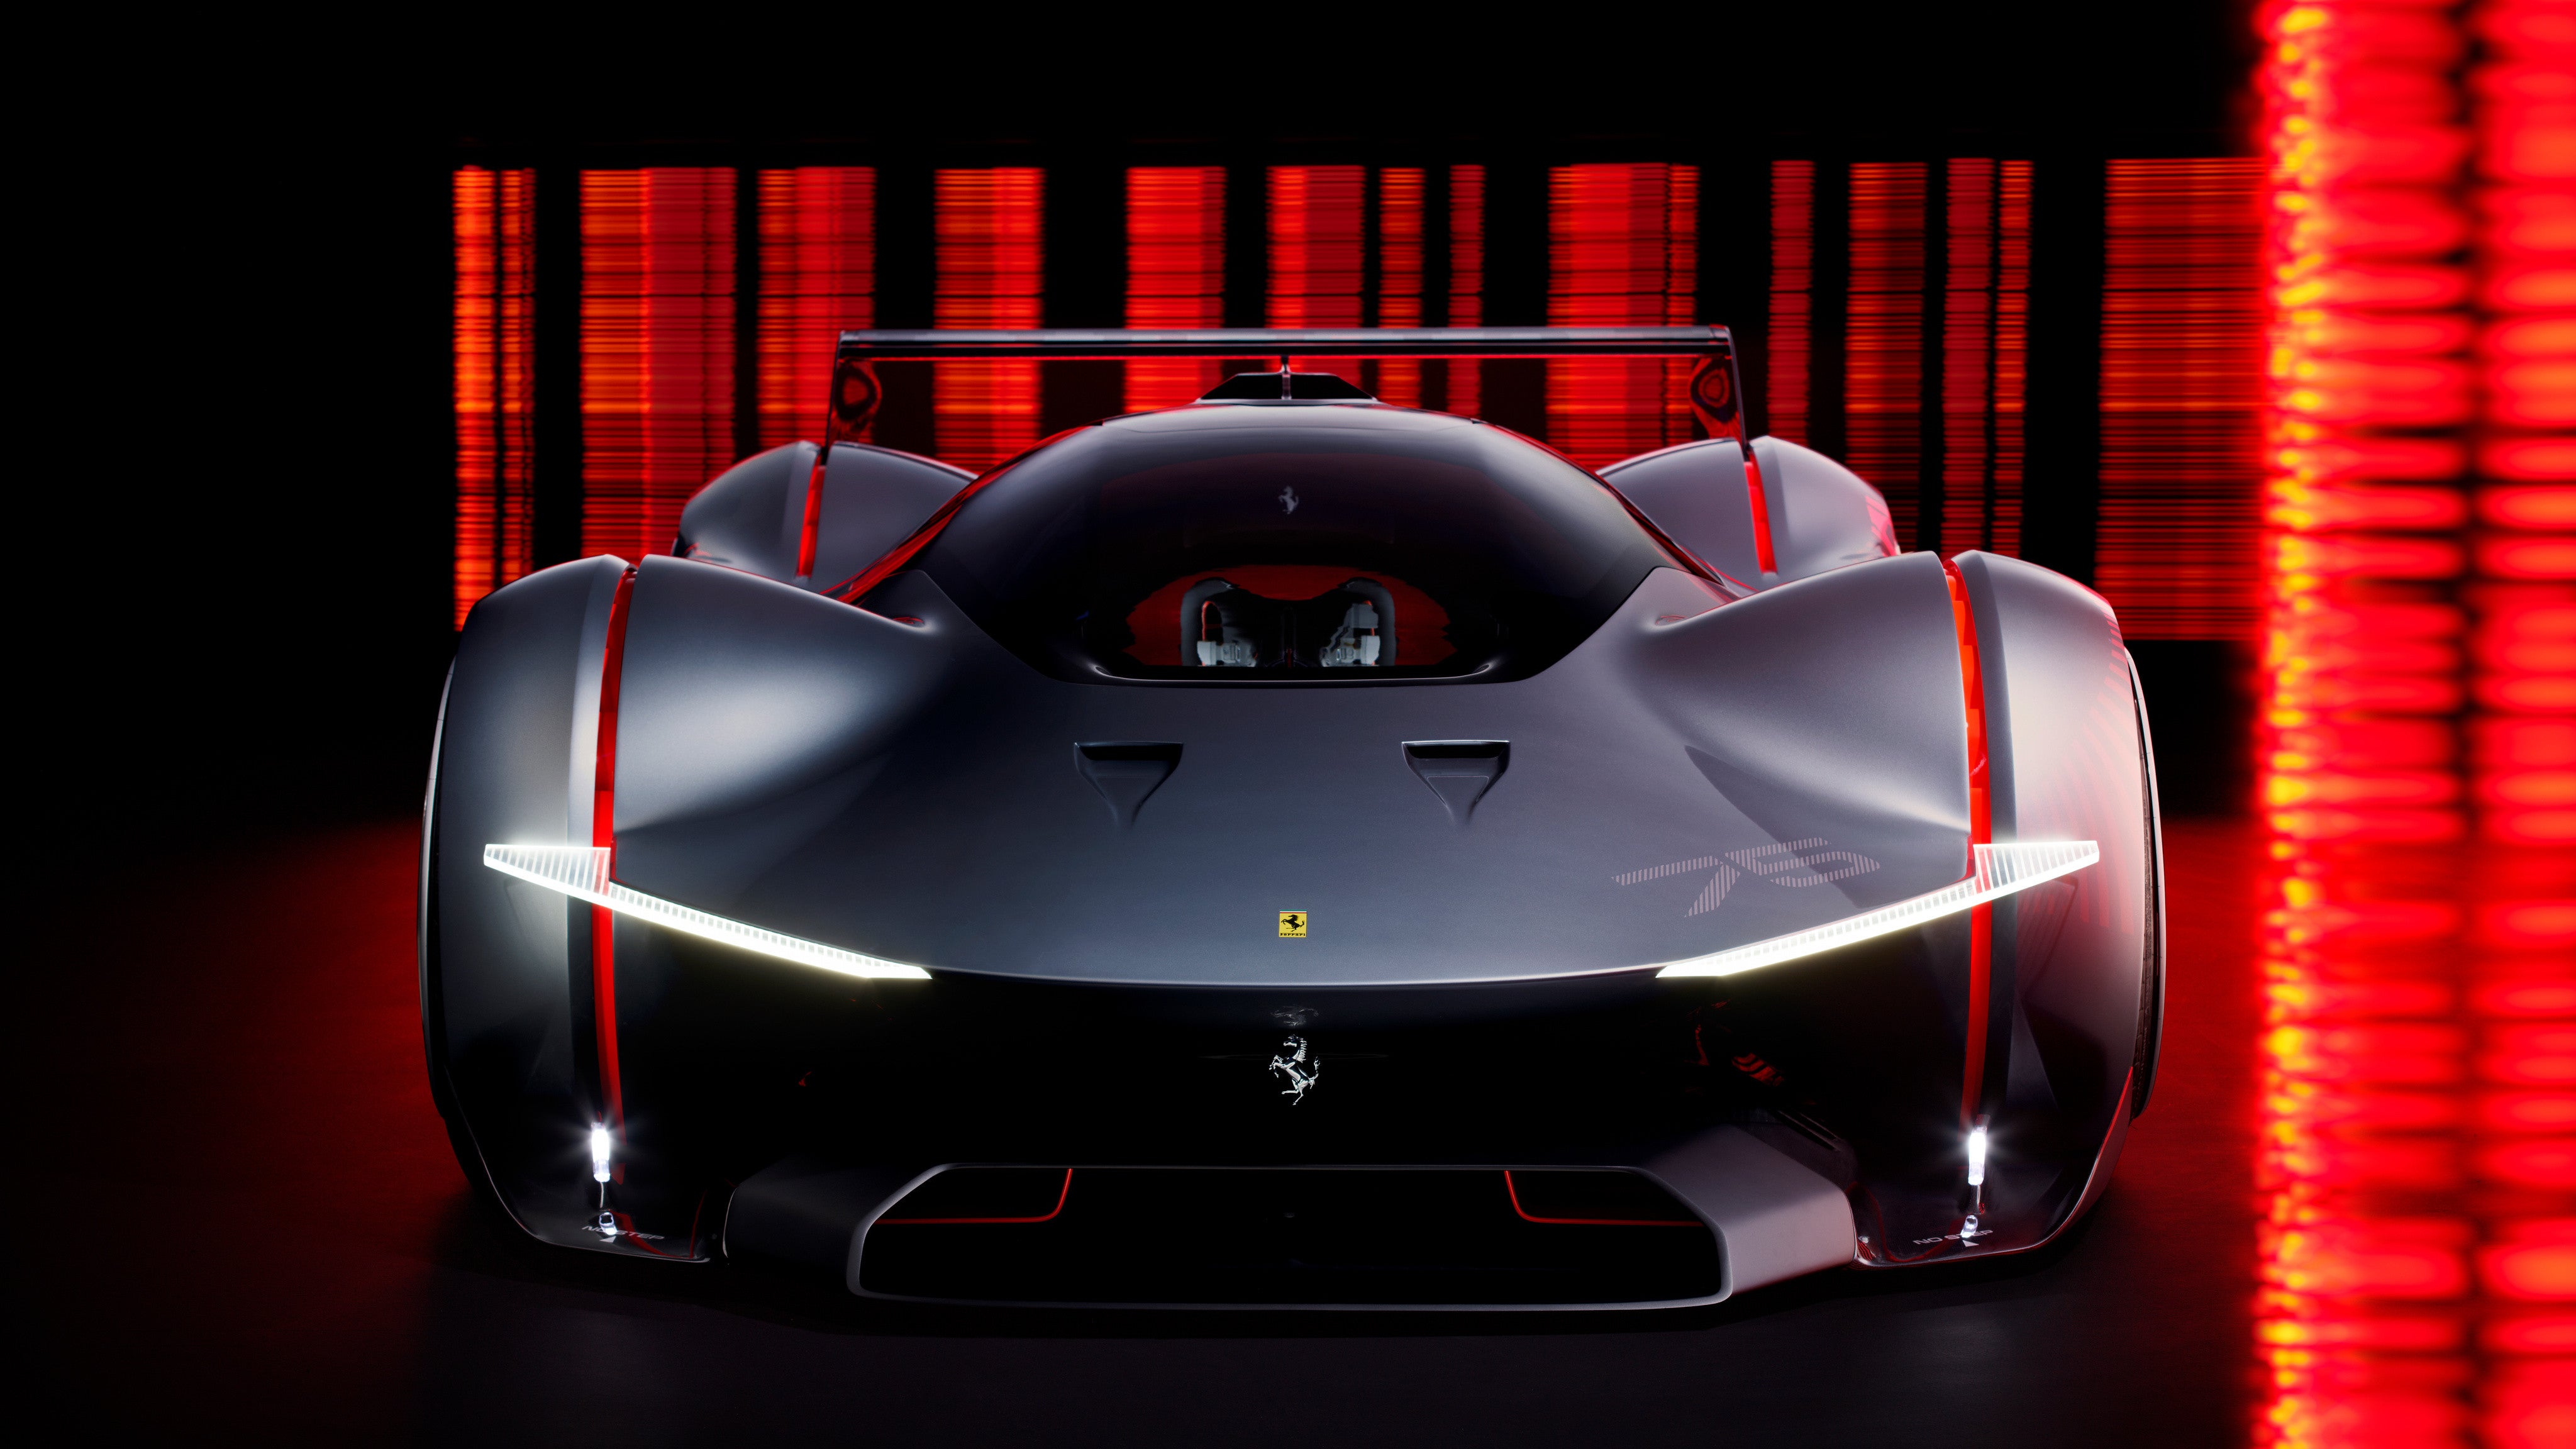 Bilder zu Gran Turismo 7: Ferrari entwickelt den Vision Gran Turismo in Originalgröße